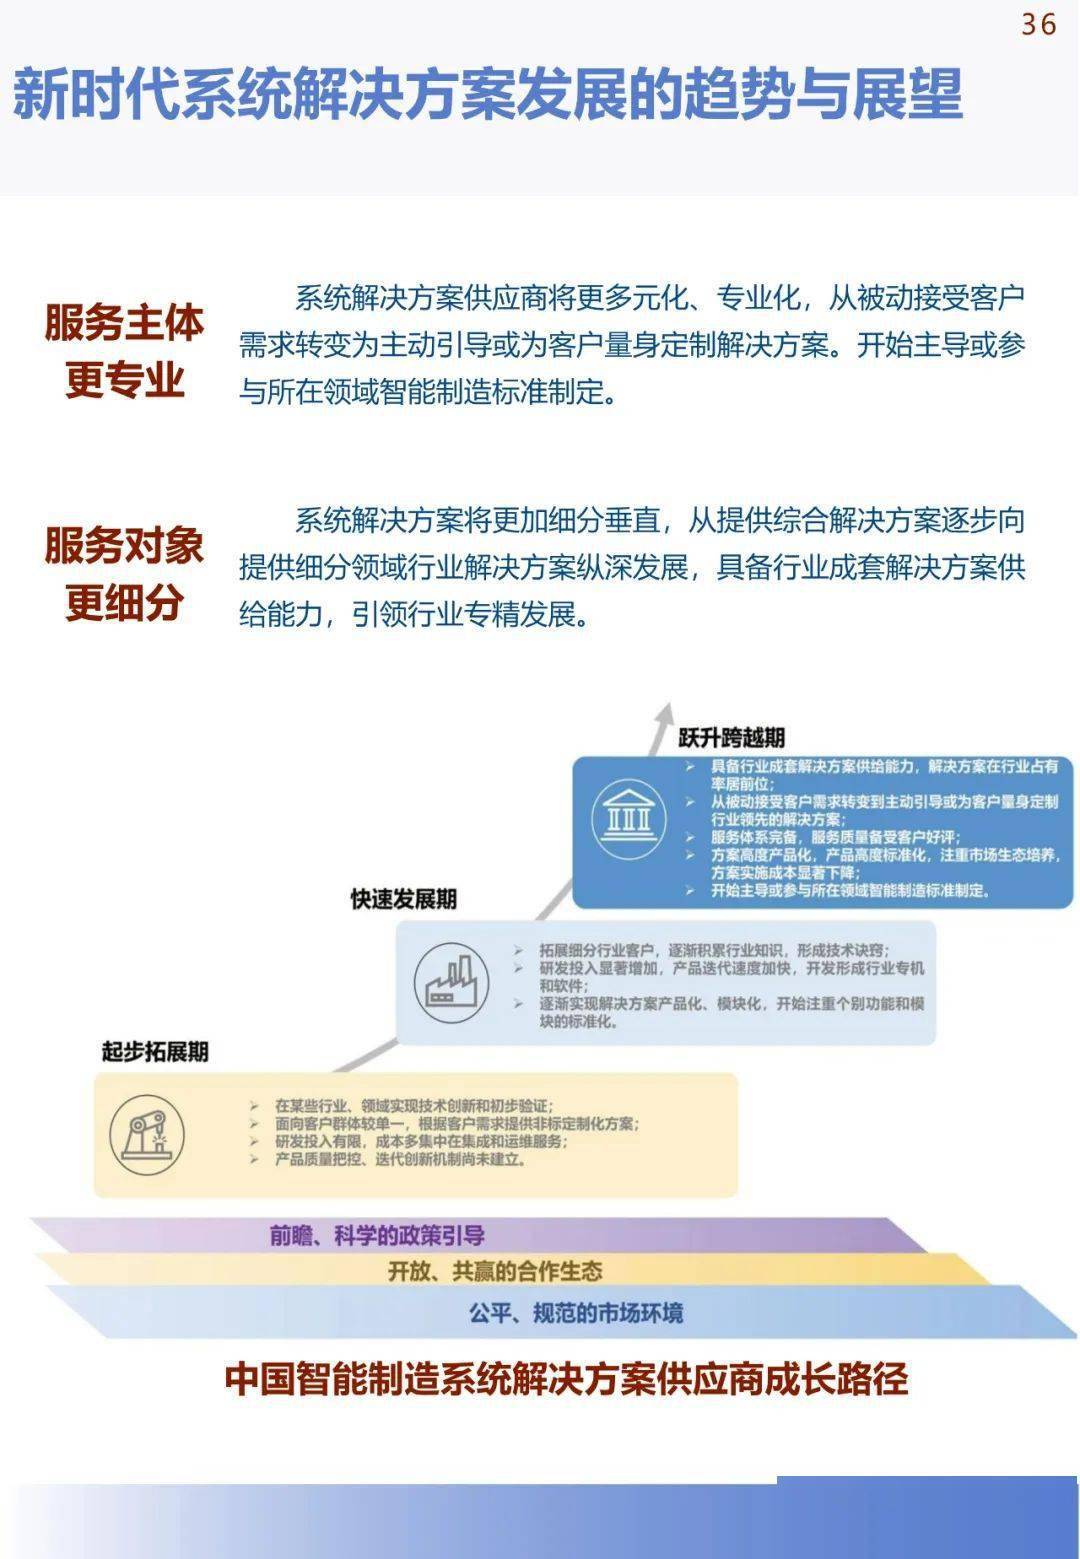 中国手机华为系统下载
:《中国智能制造发展研究报告：系统解决方案》发布(可下载)-第40张图片-太平洋在线下载